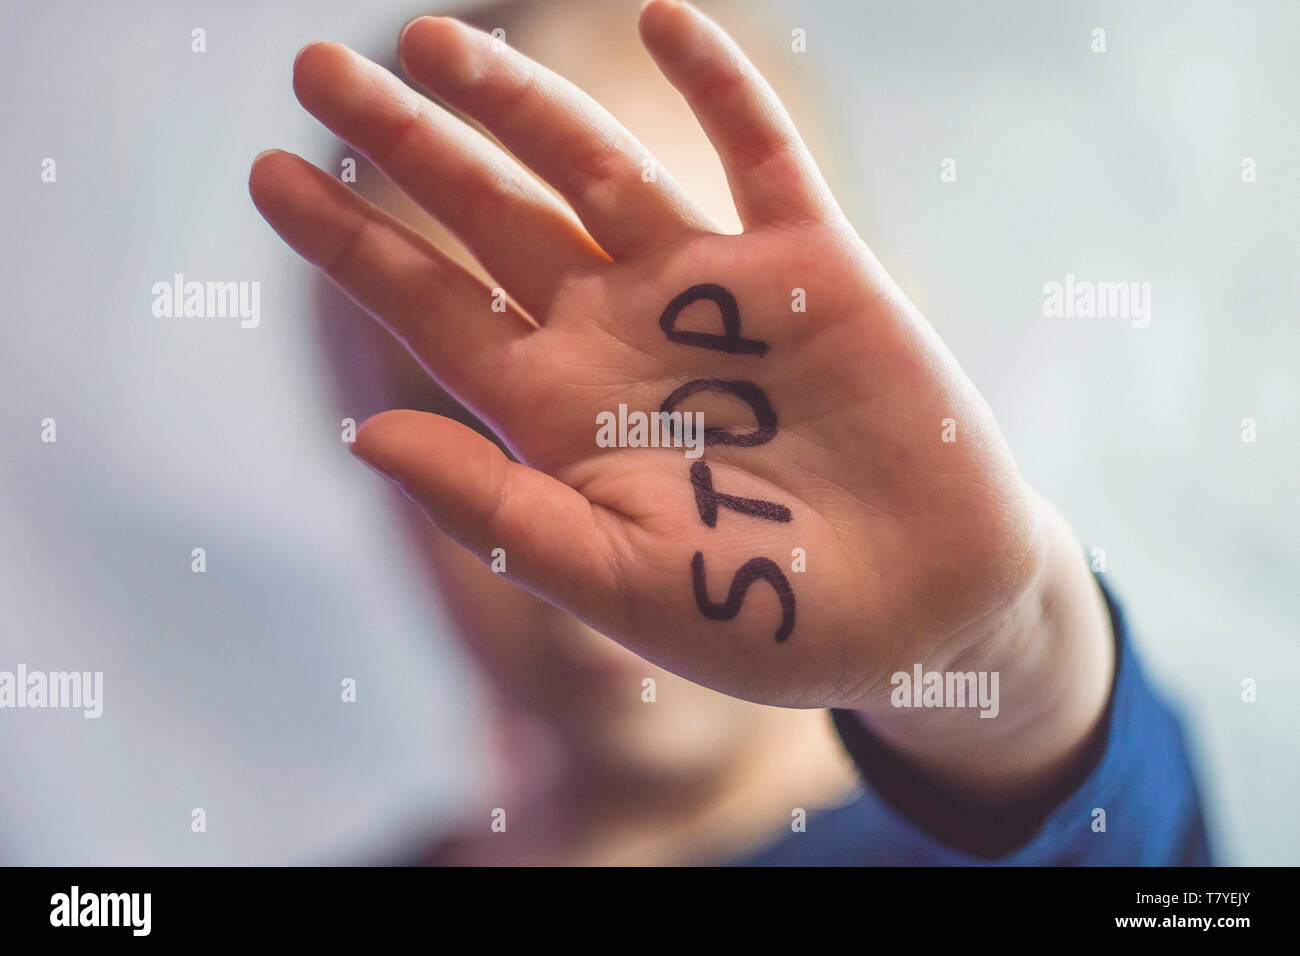 Concepto de violencia doméstica y niños abusement. Una niña muestra su mano con la palabra STOP escrito en ella. Los niños de la violencia. Foto de stock